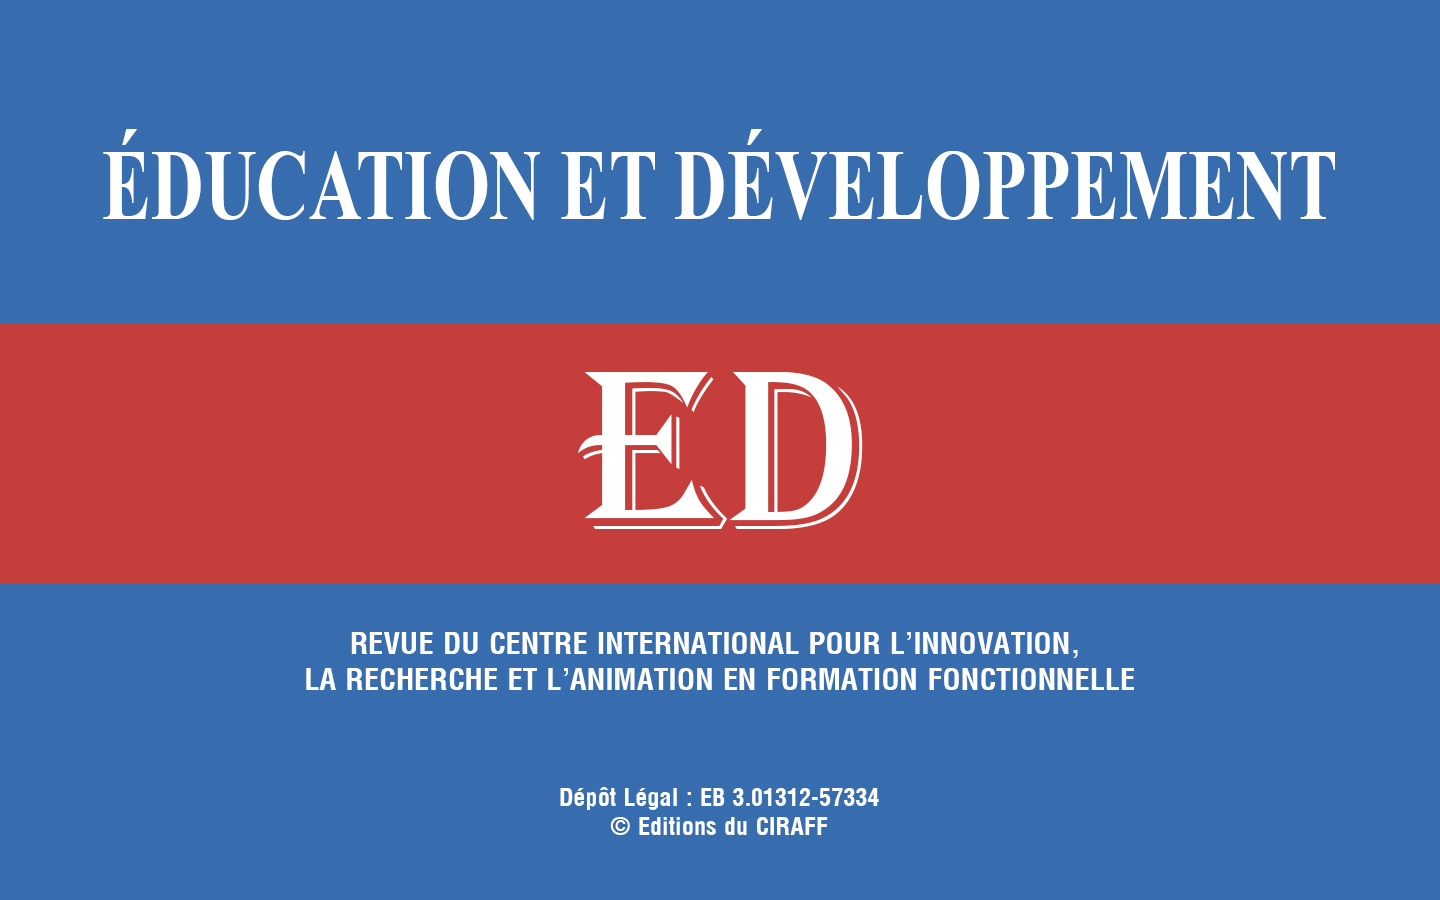 Education et developpement